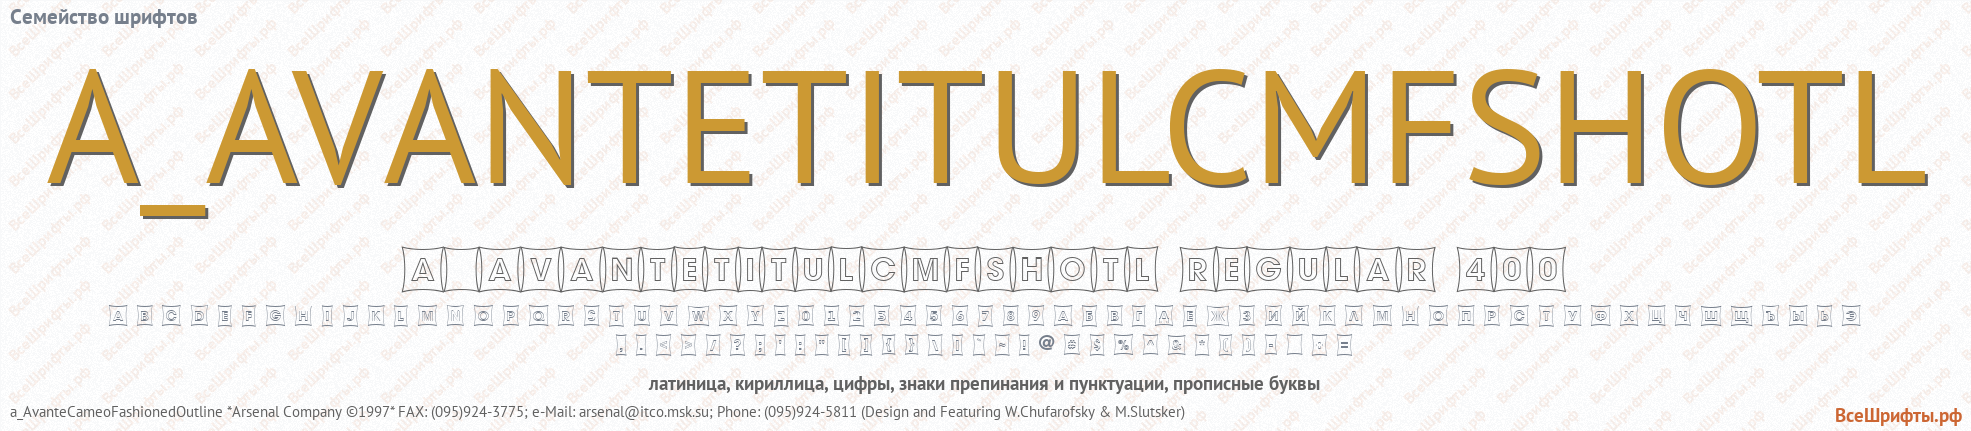 Коллекция 5000 русских шрифтов скачать бесплатно